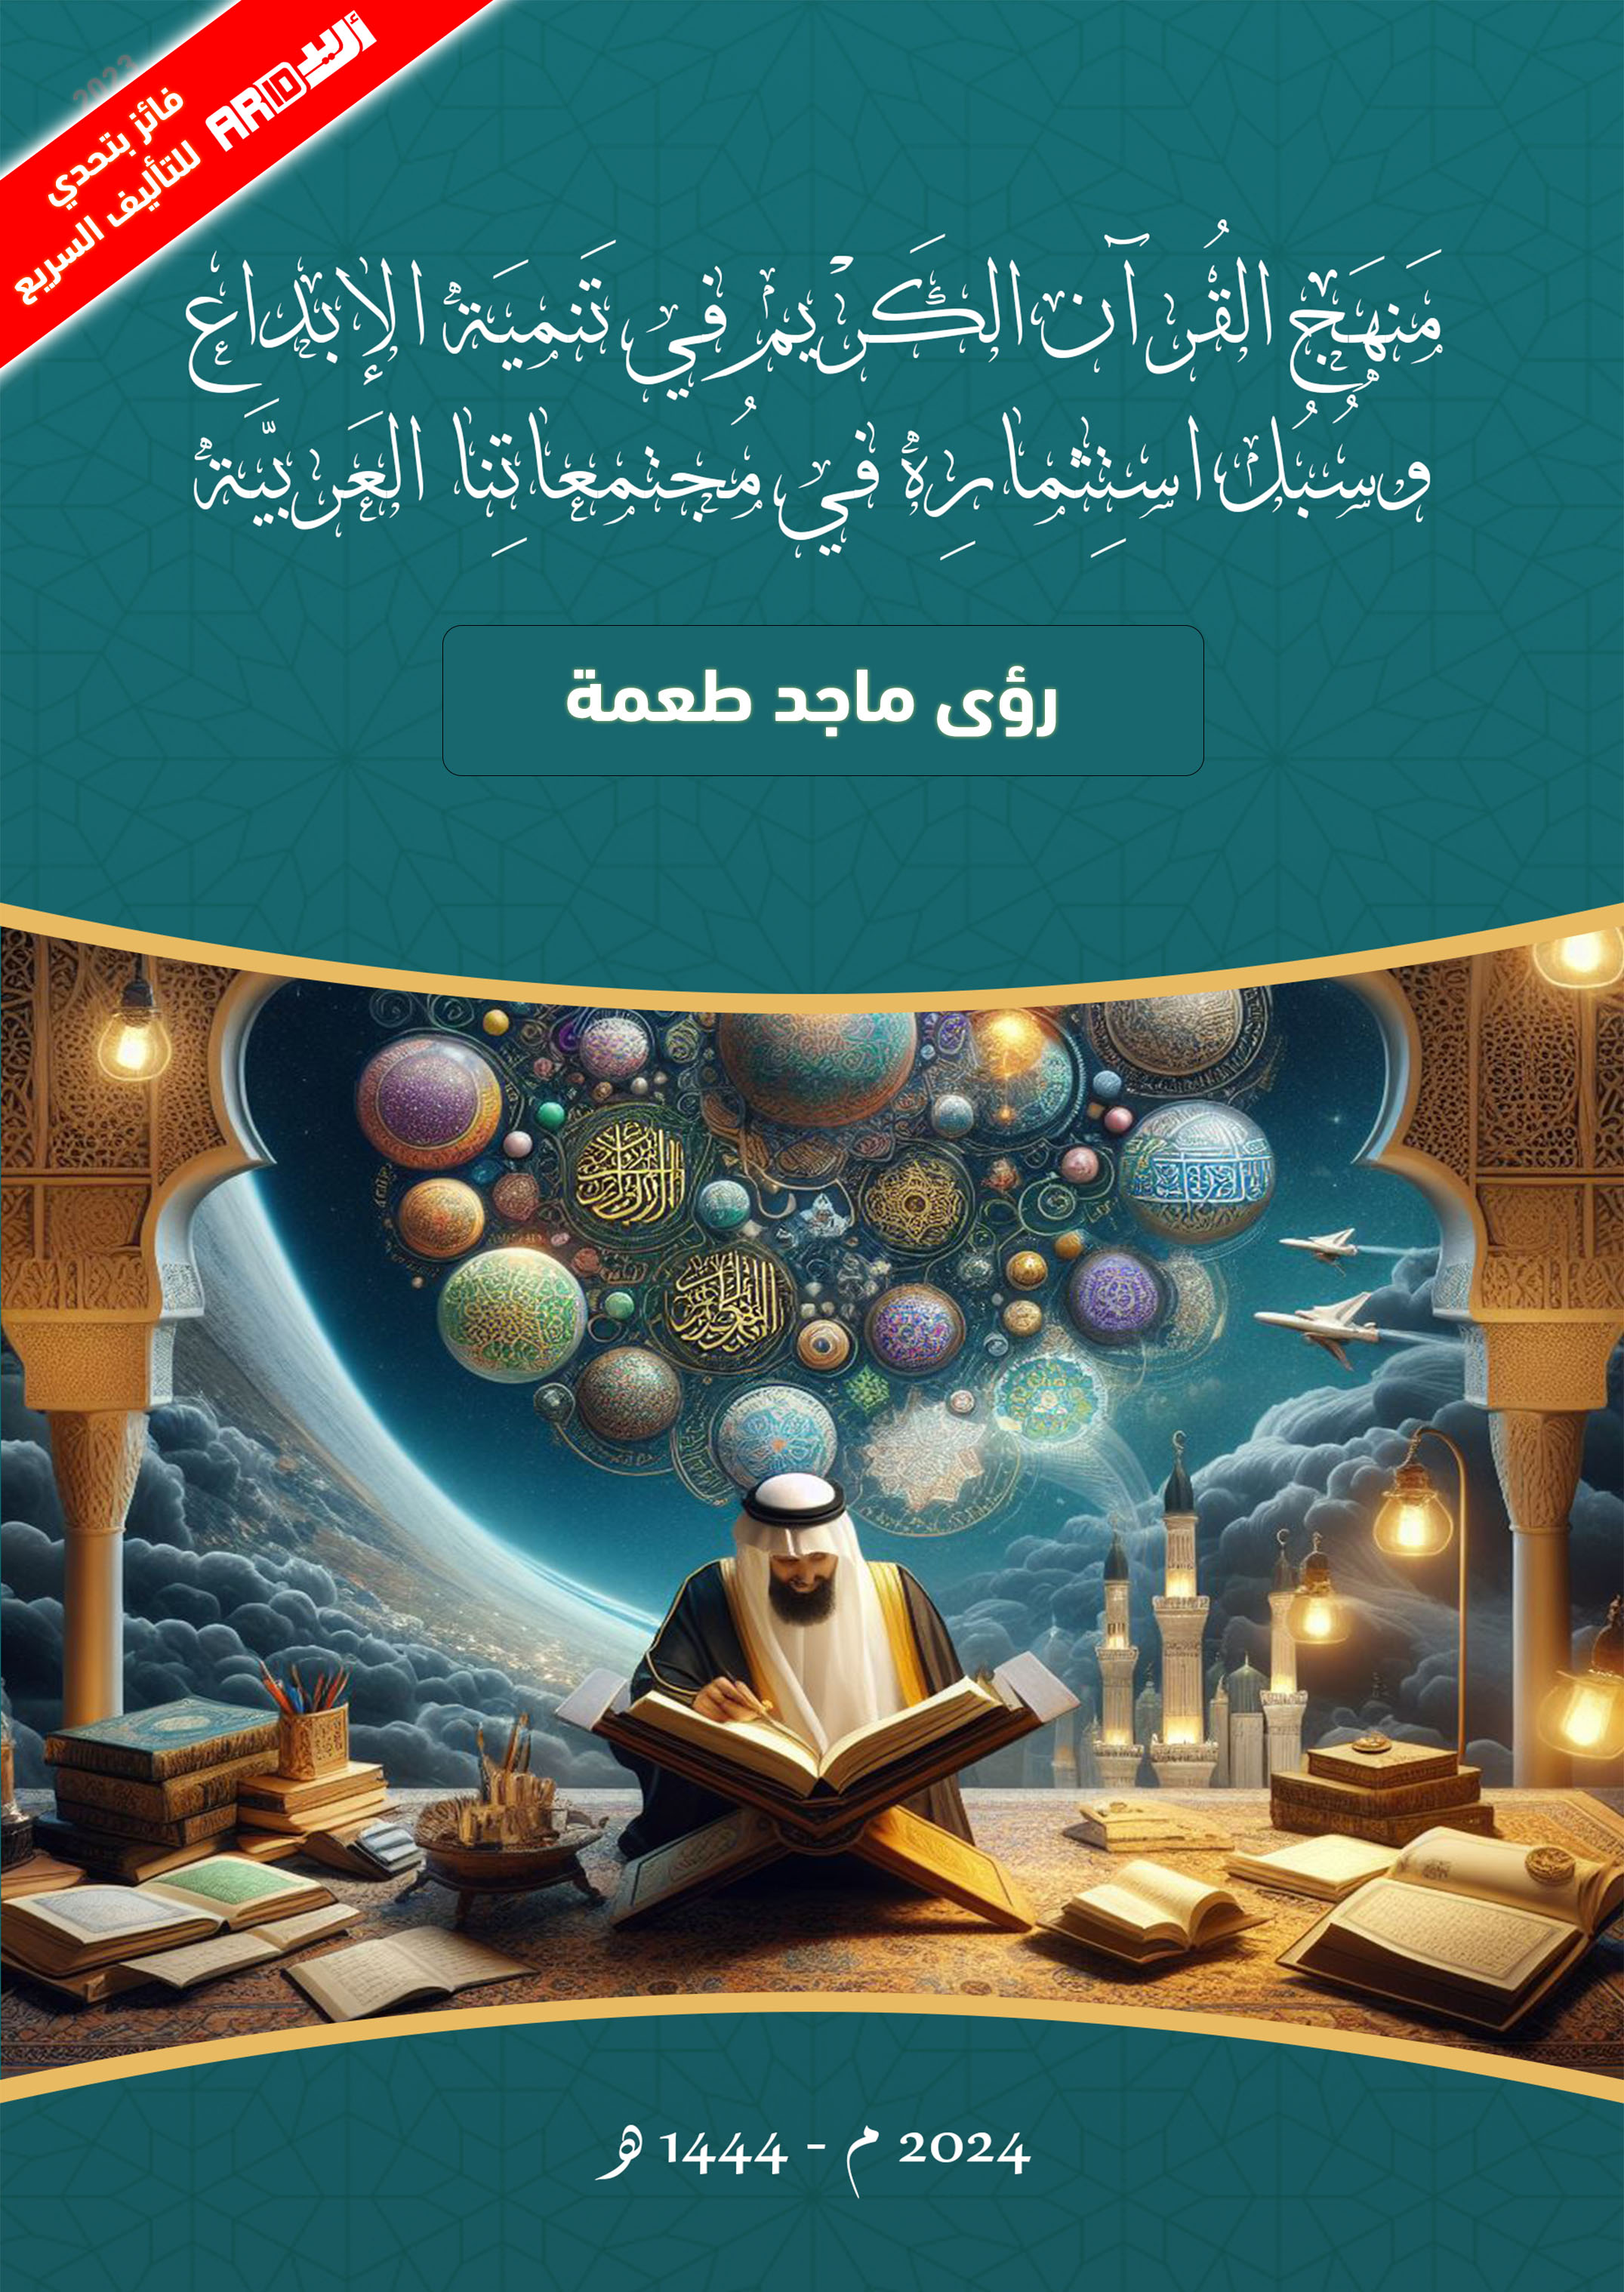 منهج القرآن الكريم في تنمية الإبداع وسبل استثماره في مجتمعاتنا العربية